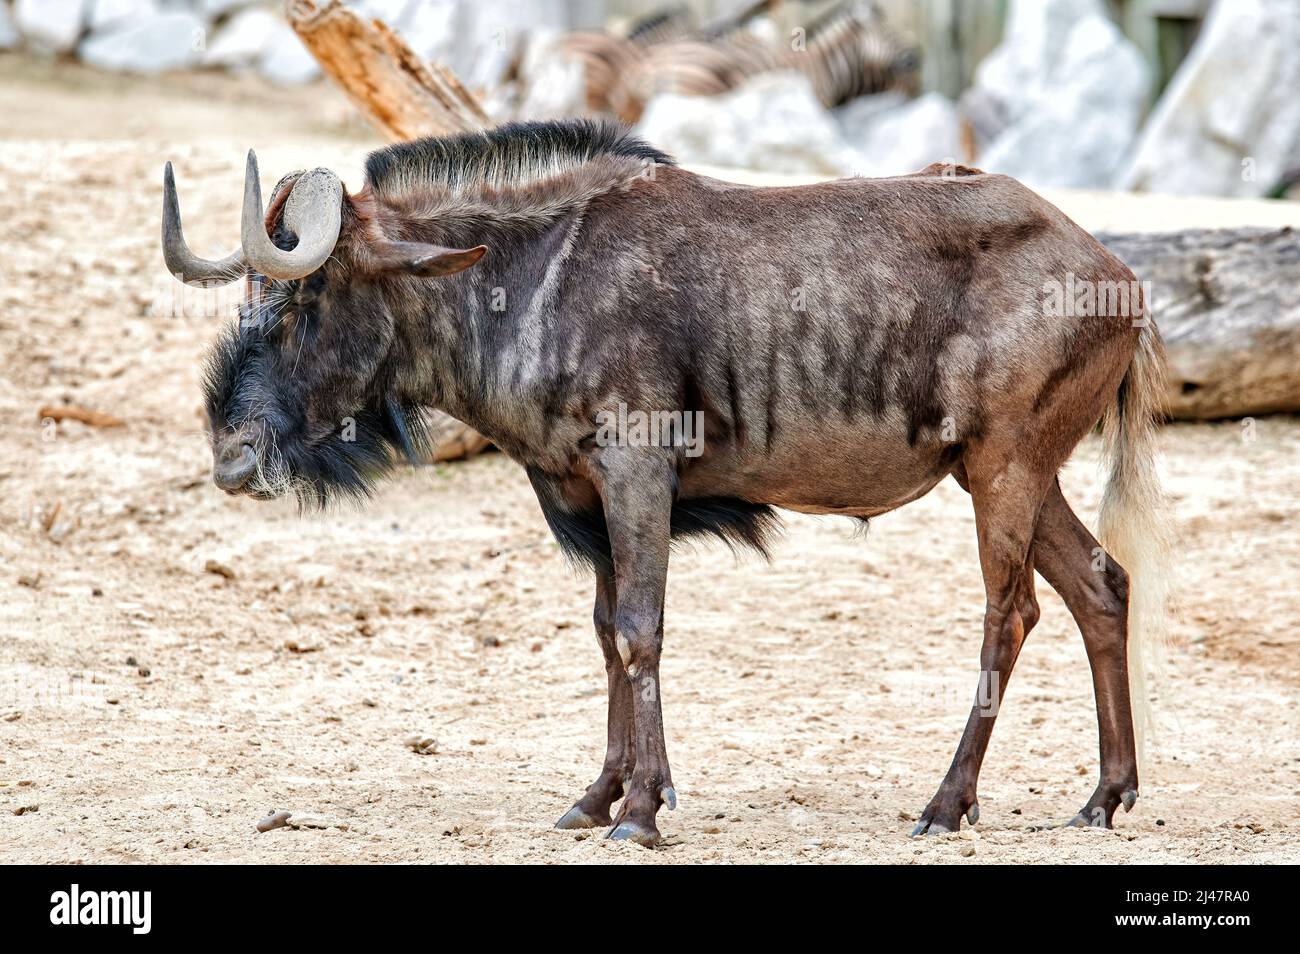 wildebeest dalla coda bianca, Connochaetes gnou, camminando e foraggiando sulla sabbia Foto Stock